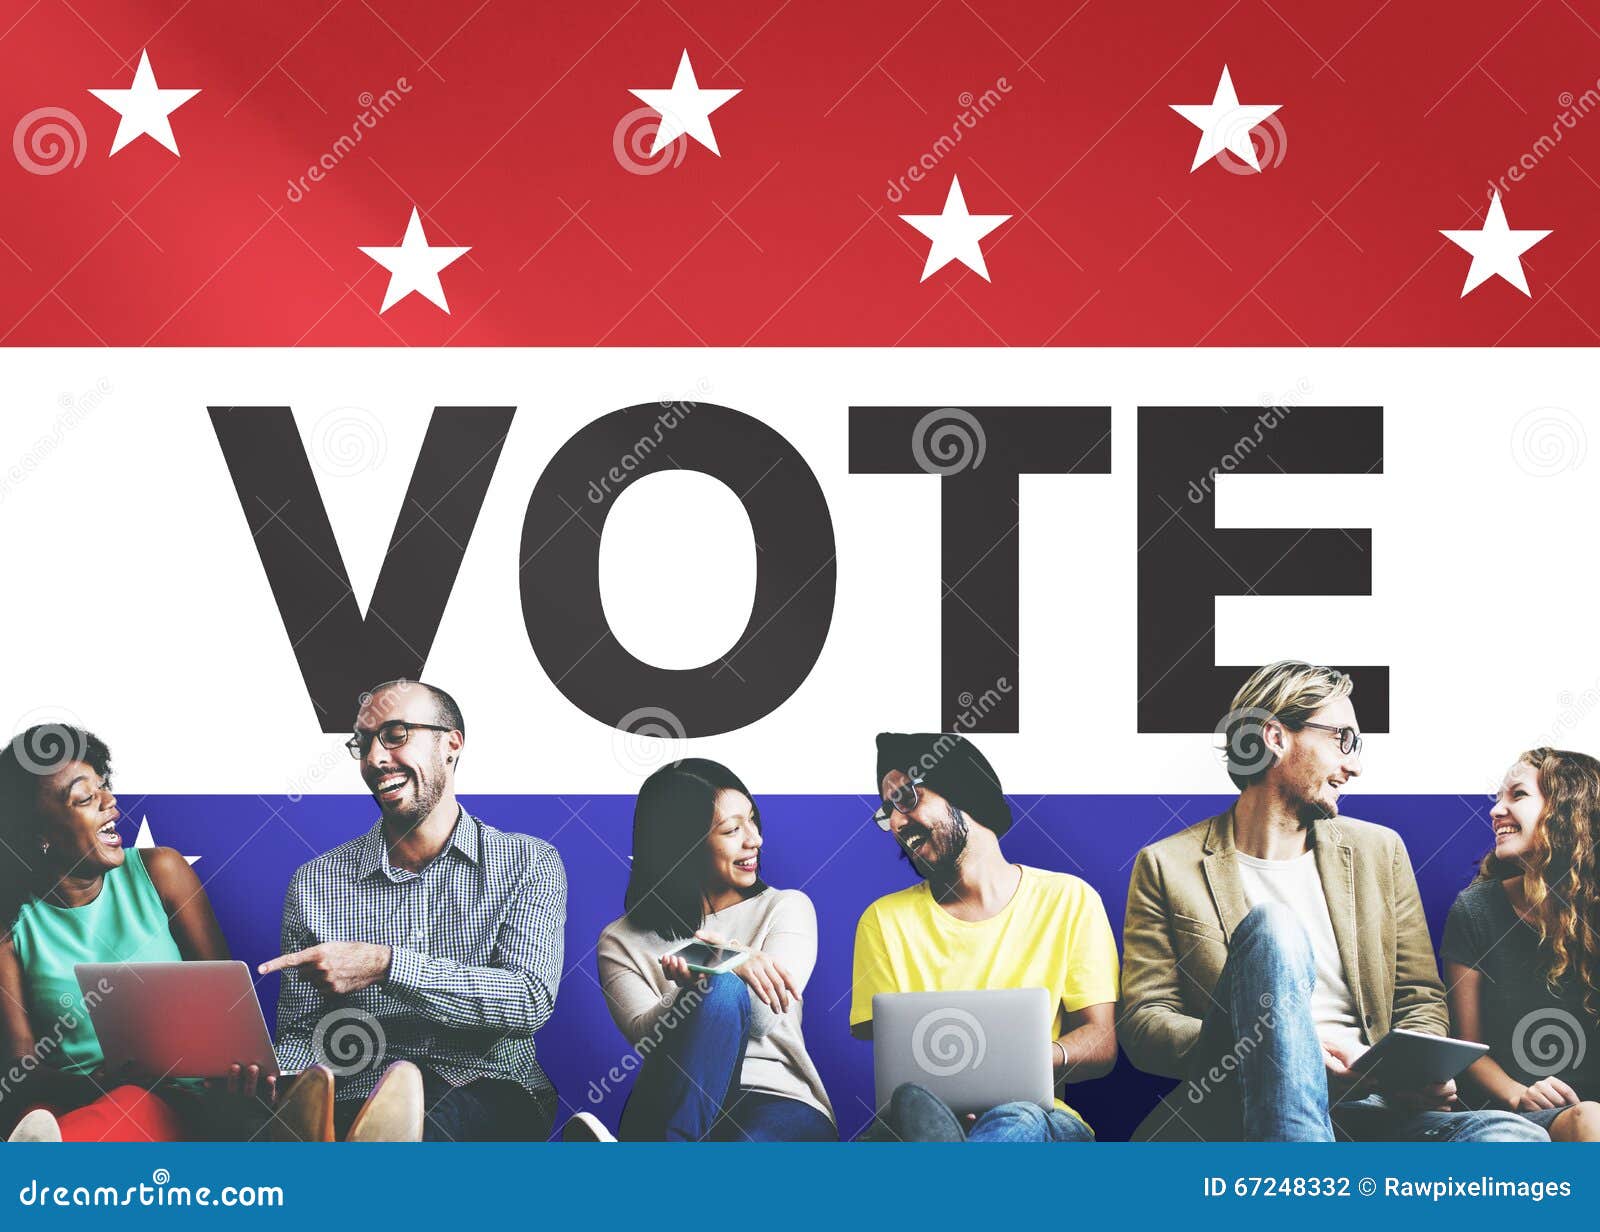 vote voting election politic decision democracy concept